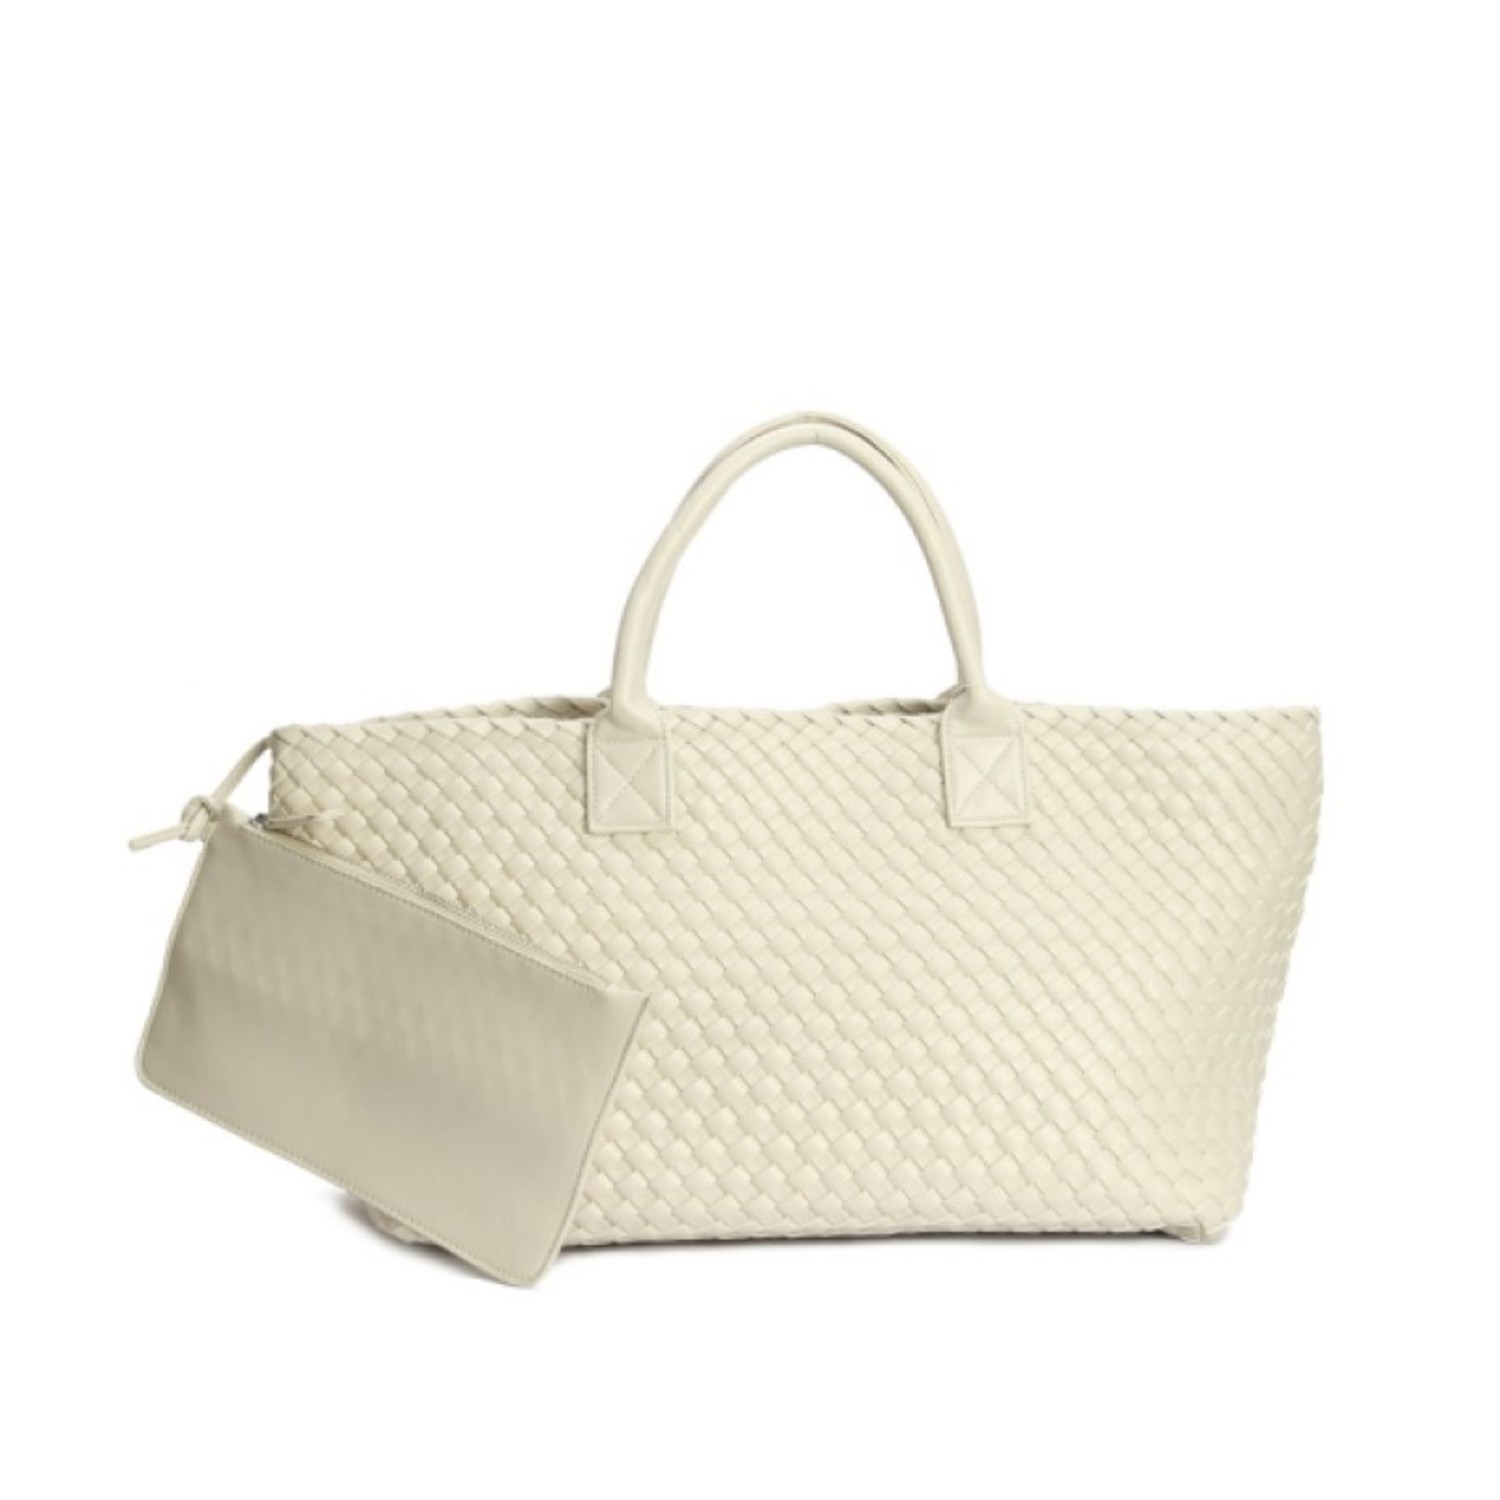 Shop METROCITY Women's White Bags